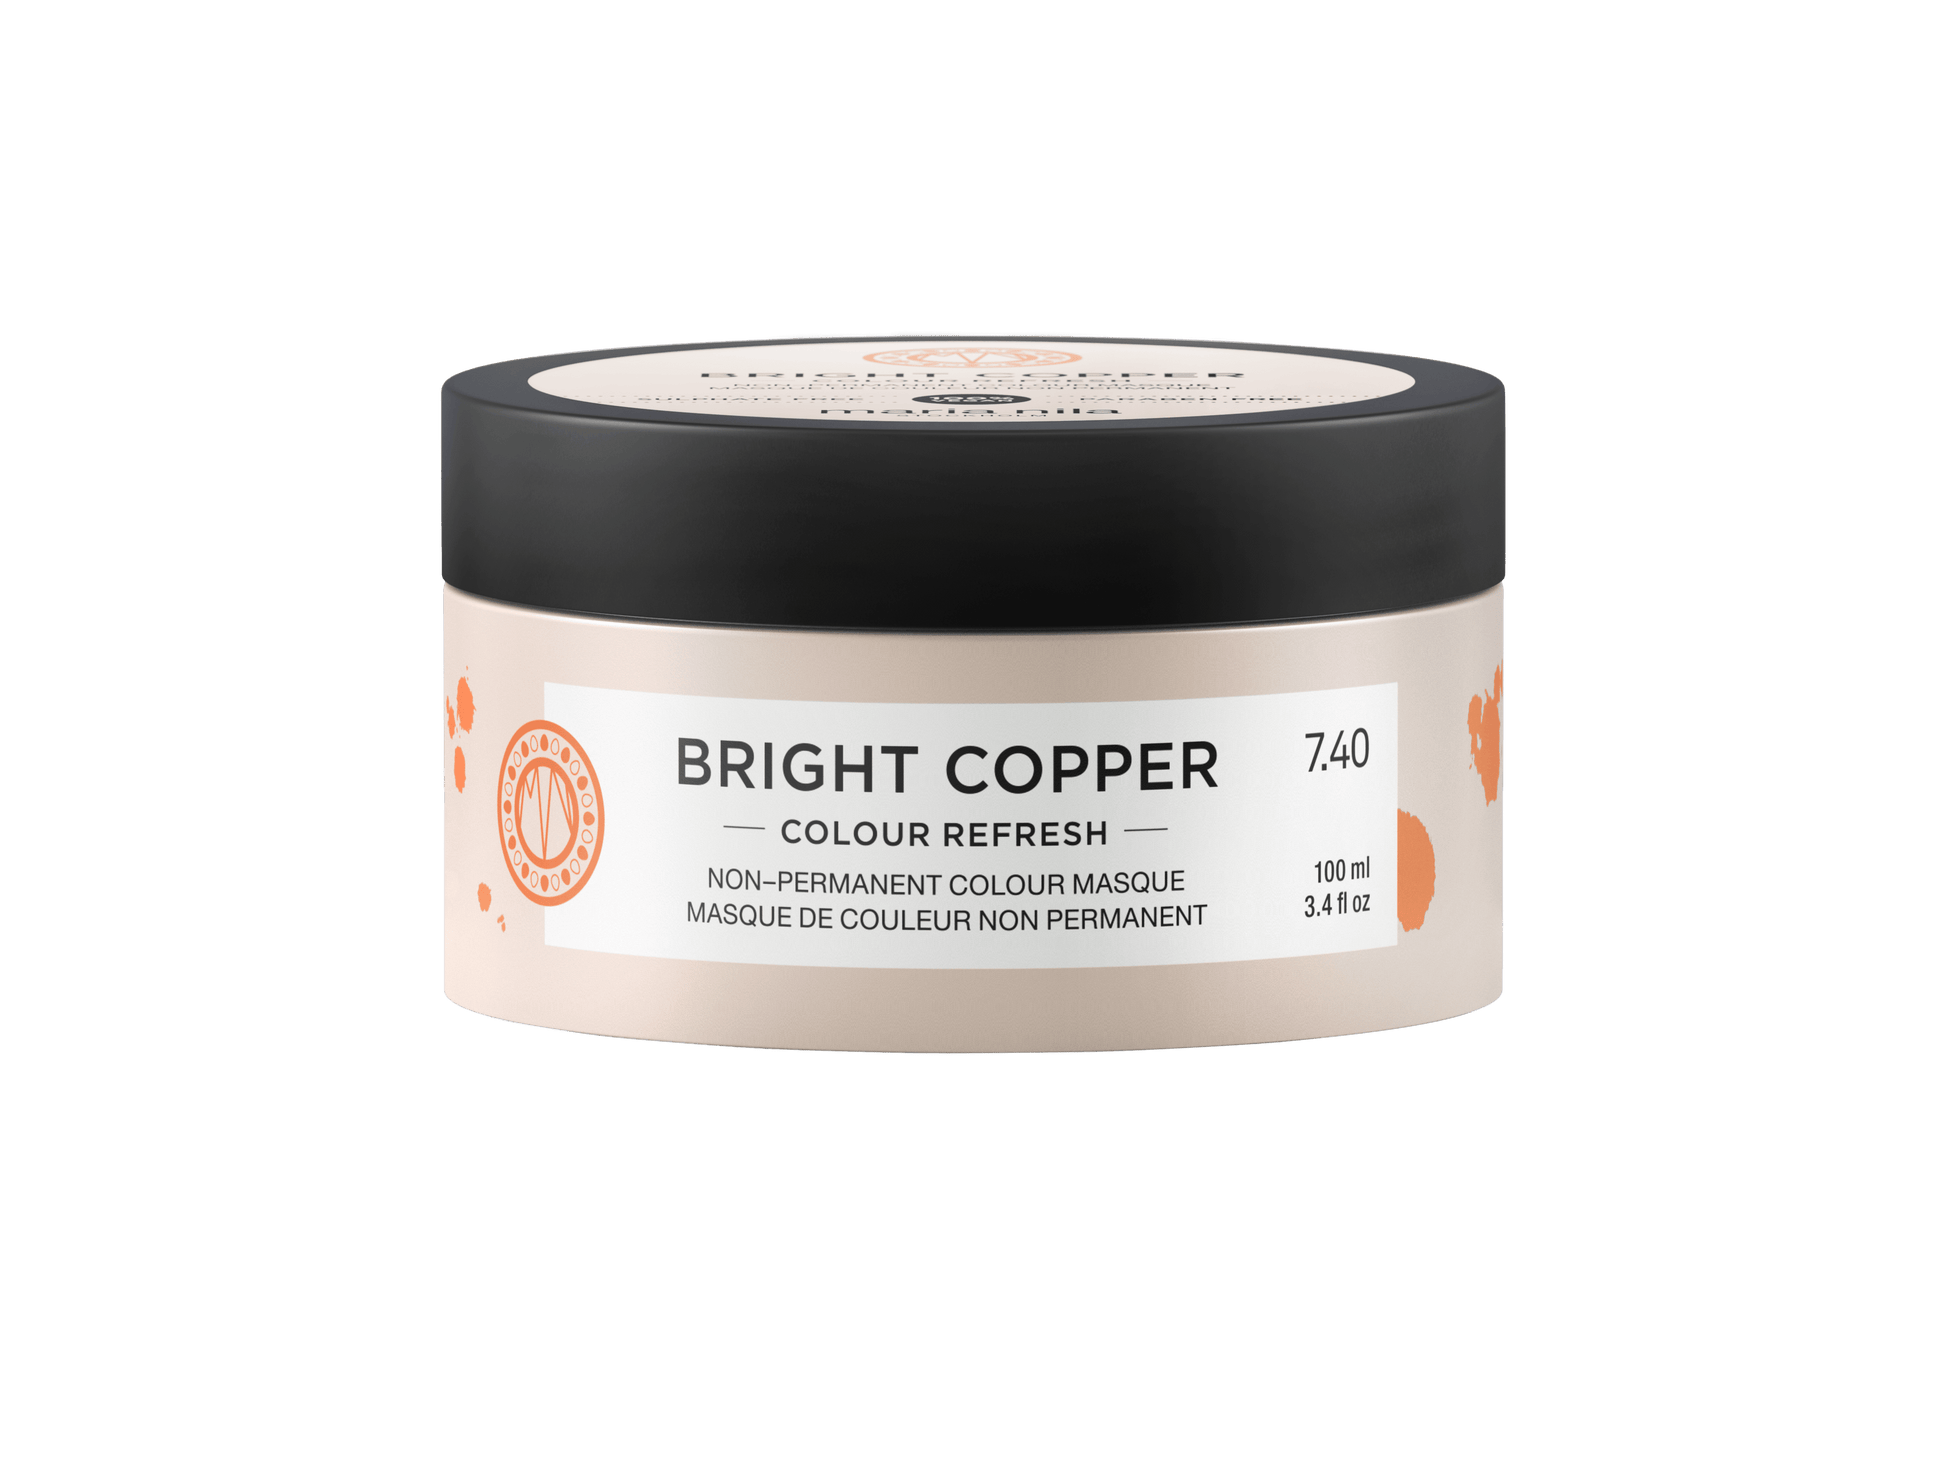 Colour Refresh Bright Copper - The Coloroom 